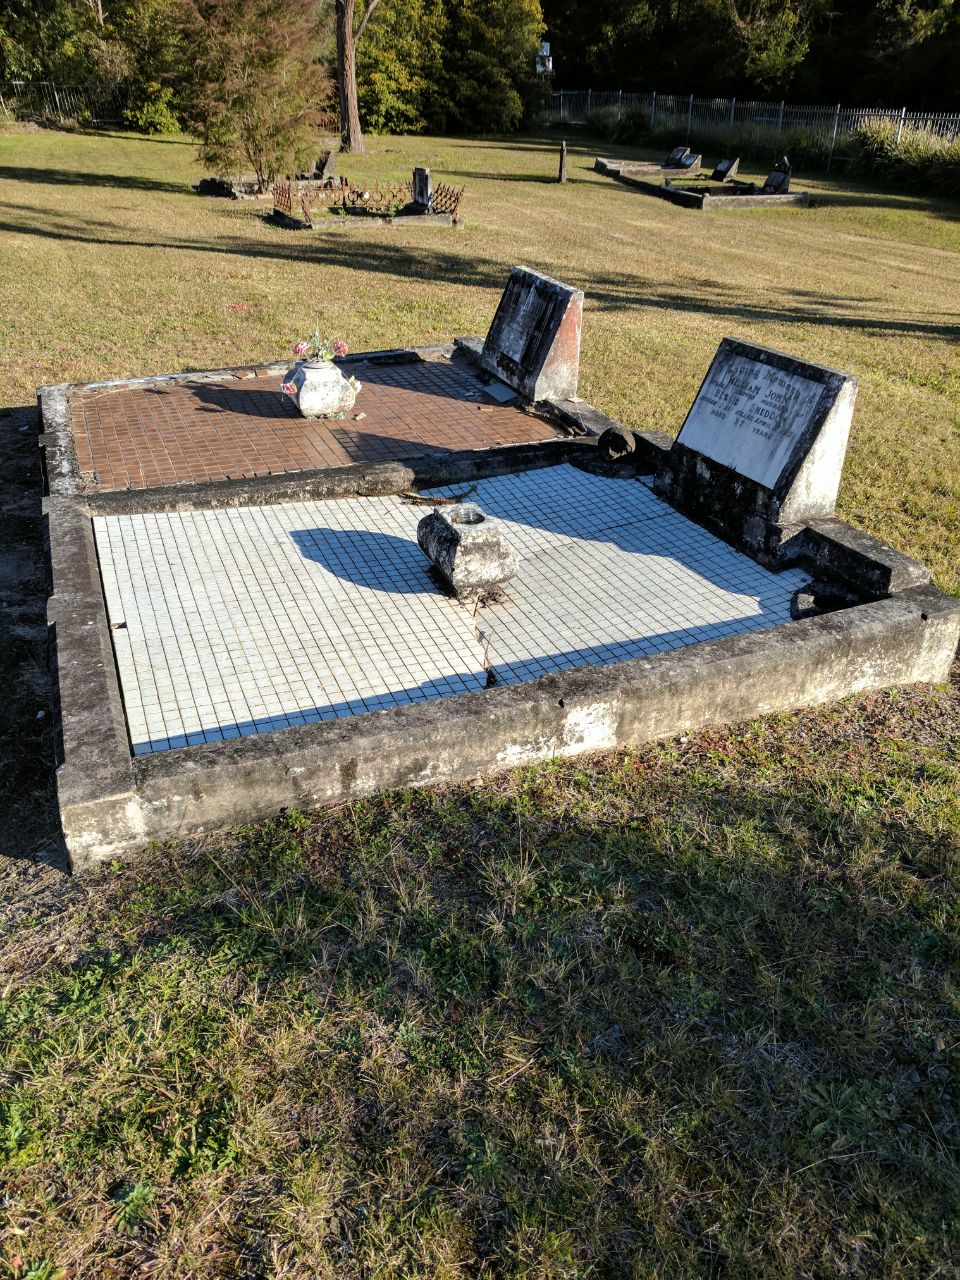 Minmi Cemetery | cemetery | 20 Minmi Rd, Minmi NSW 2287, Australia